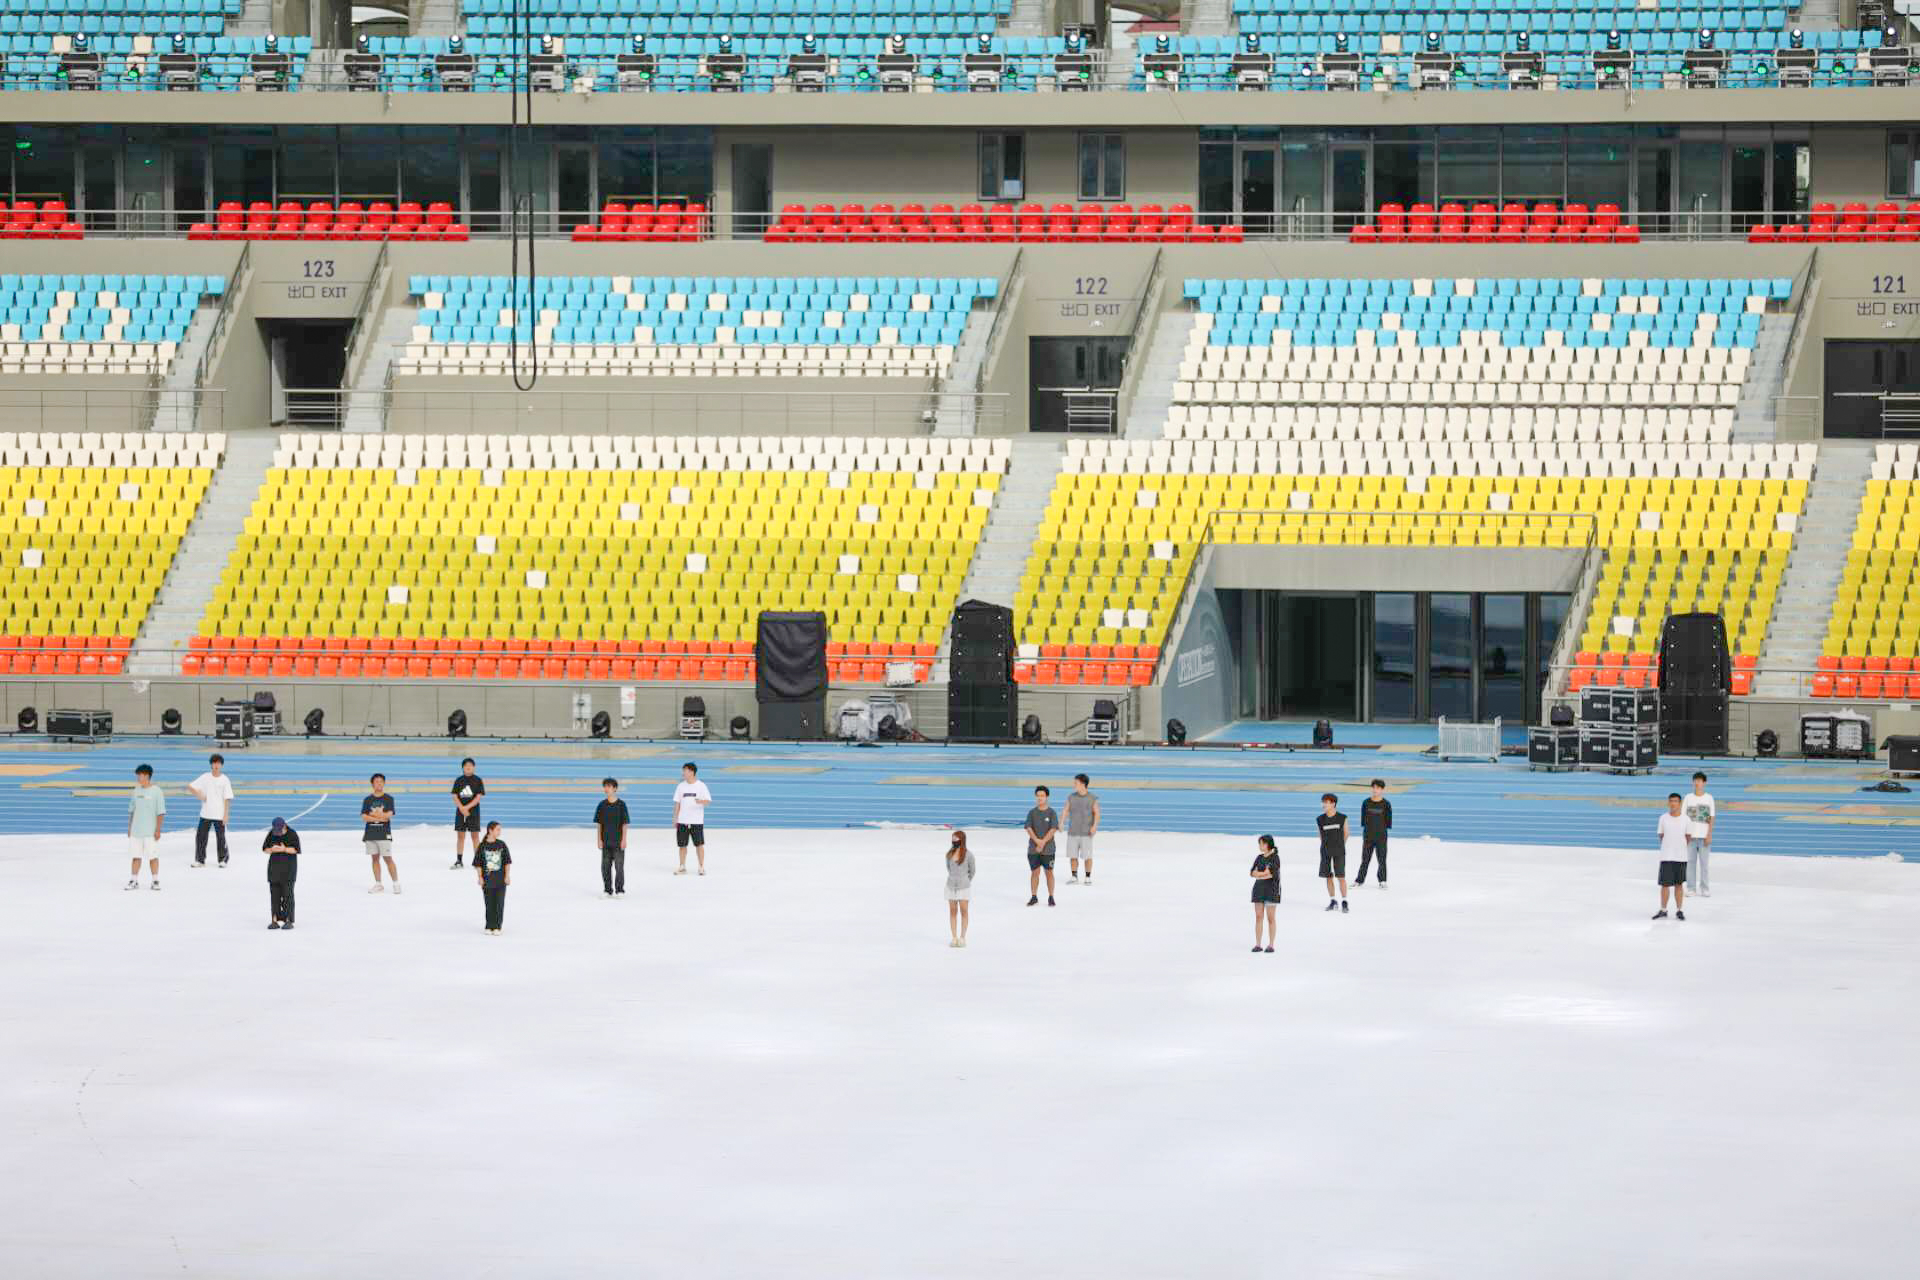 海南省运会图片